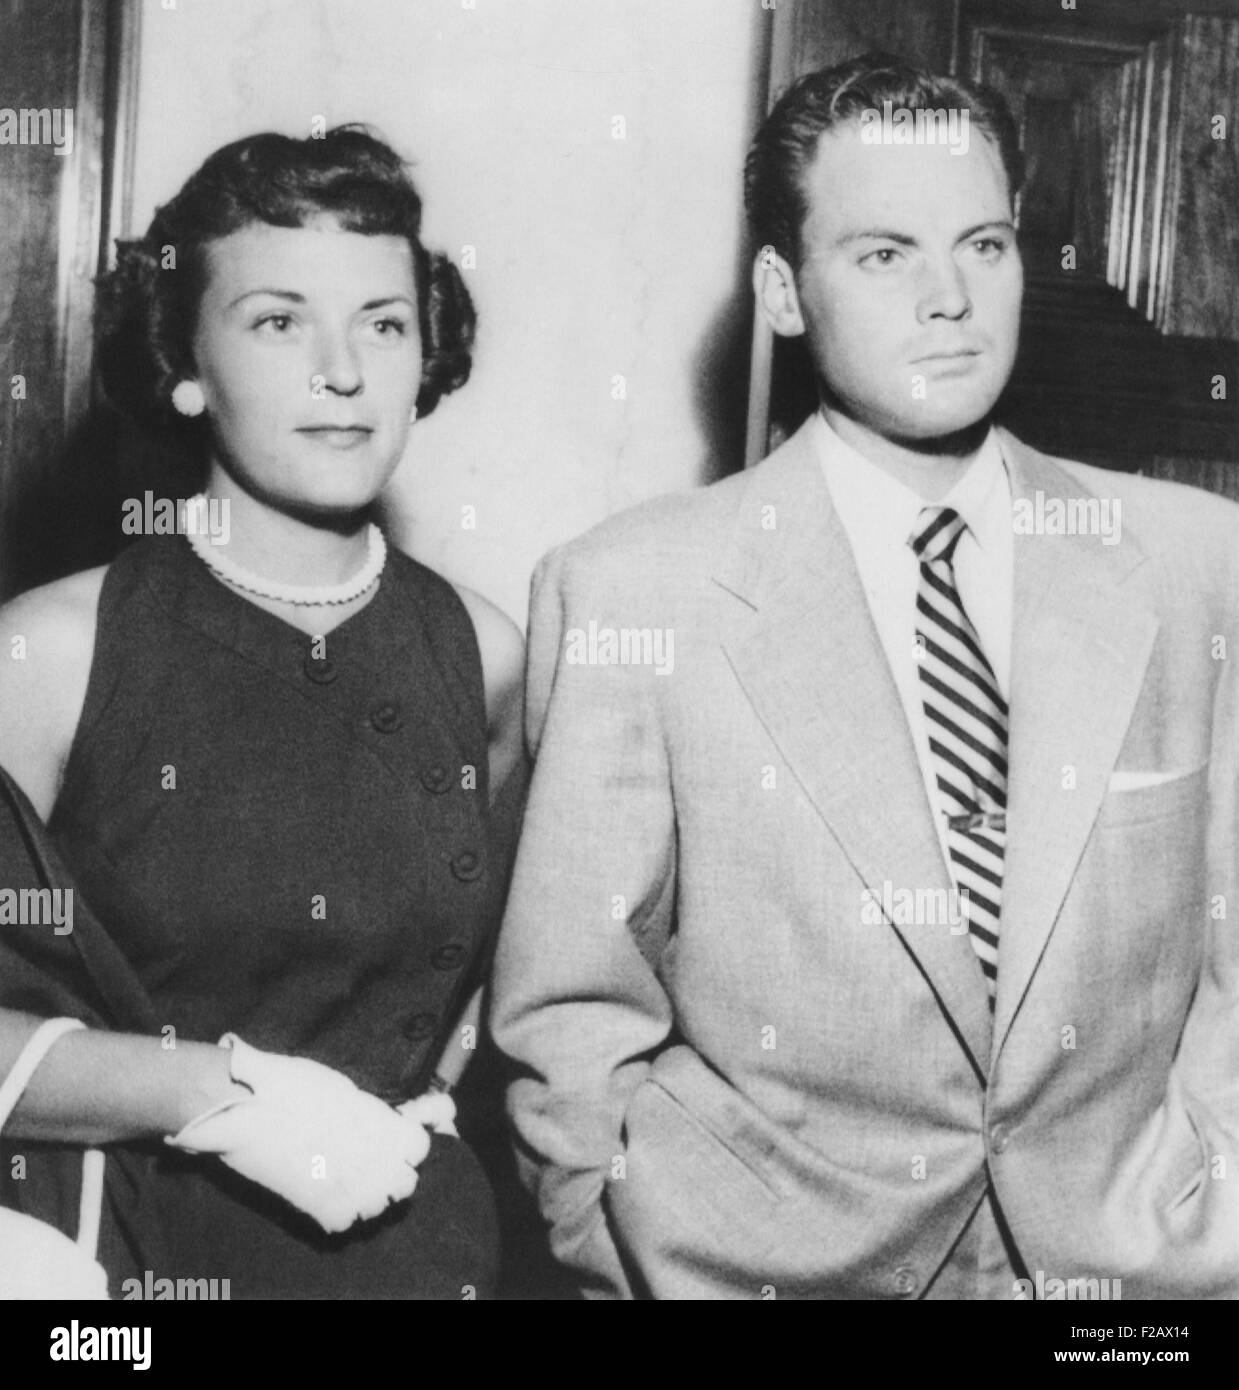 Schauspieler John Agar vor Gericht am 20. Juli 1950 Trunkenheit am Steuer Gebühren stellen. Mit ihm ist seine Frau Loretta Barnett Kämme Agar. (CSU 2015 11 1178) Stockfoto